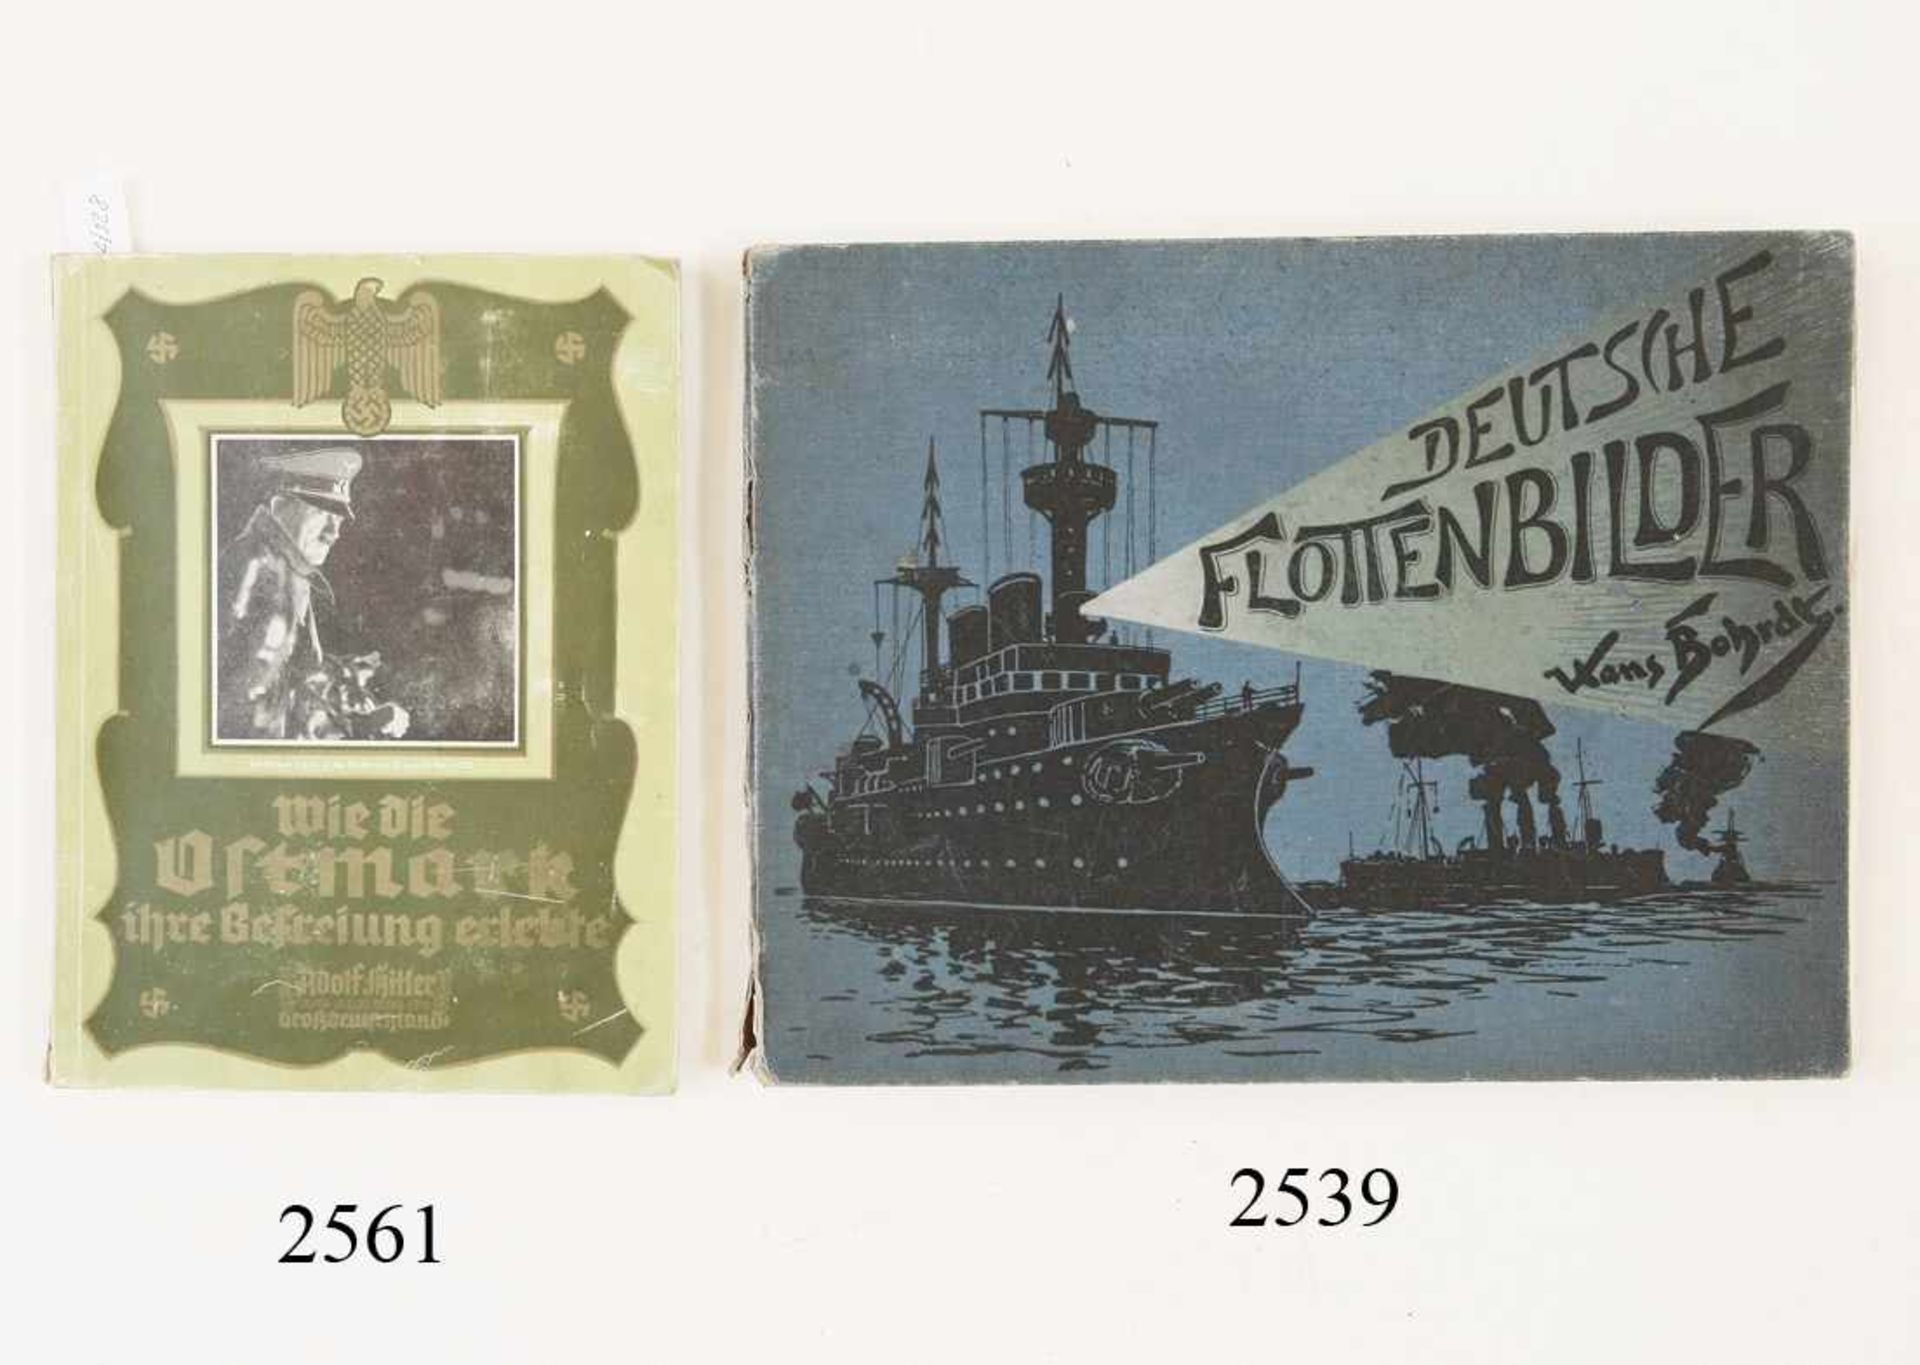 Bildband "Deutsche Flottenbilder"12 Kunstdrucke. Ausgabe 1903. Einband beschädigt. Zustand: II-